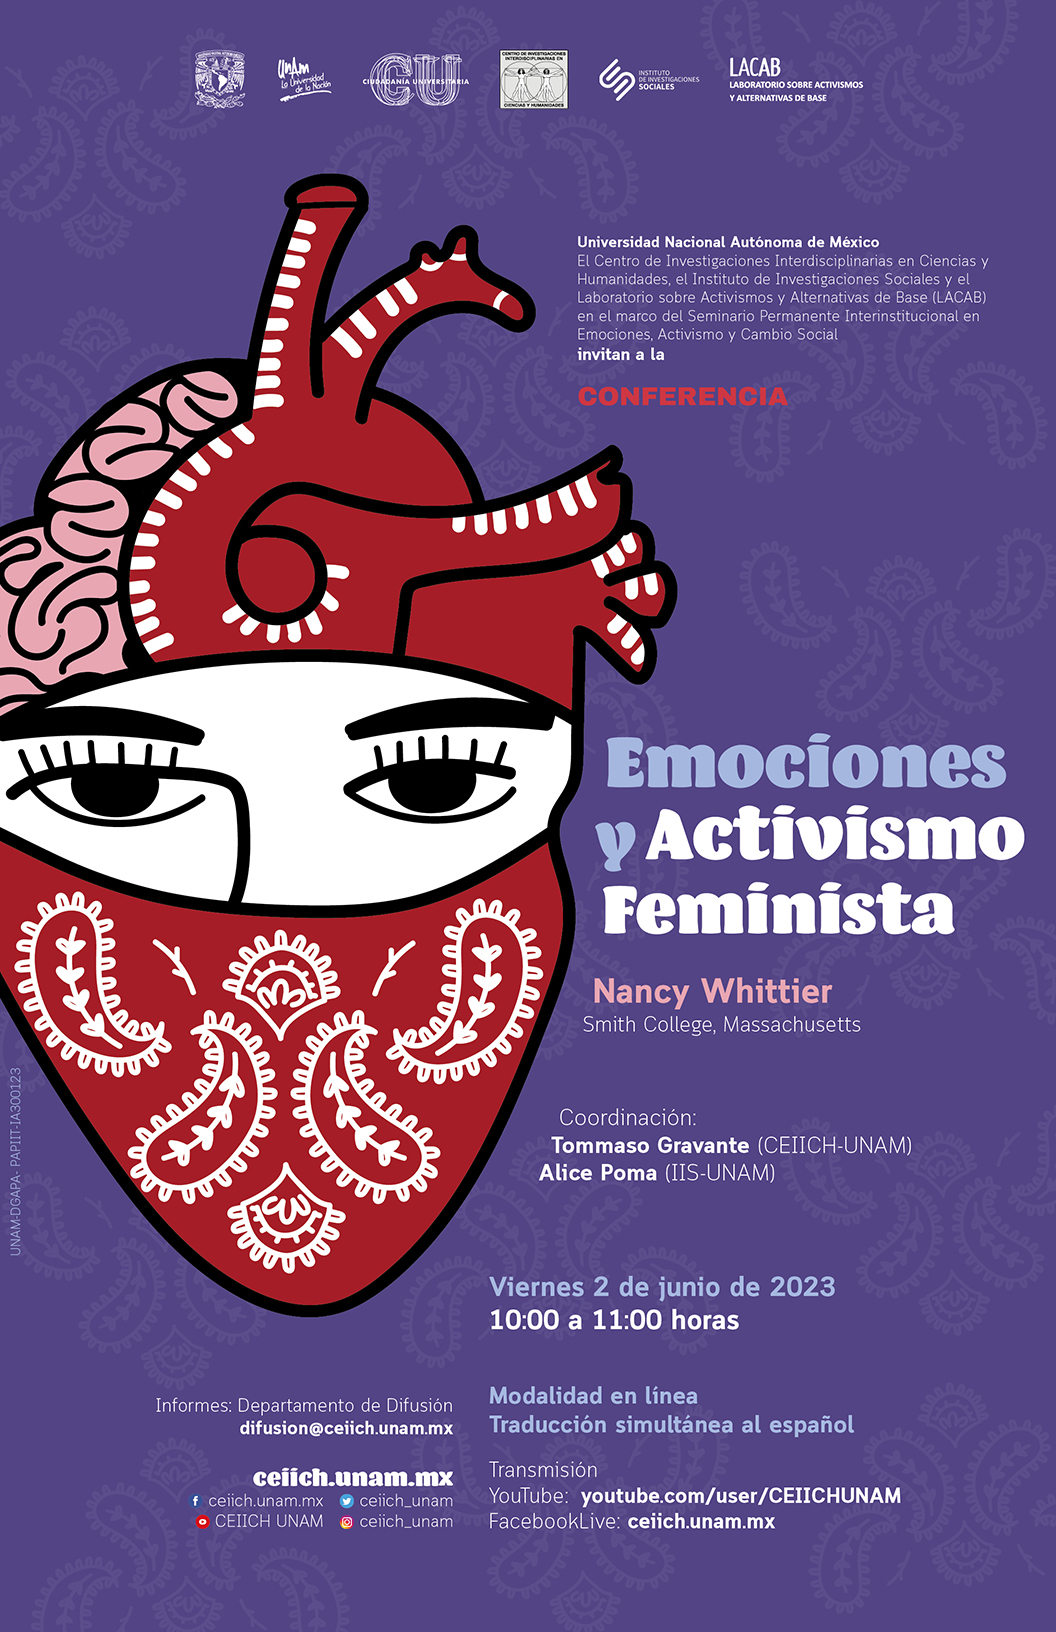 Emociones y Activismo Feminista